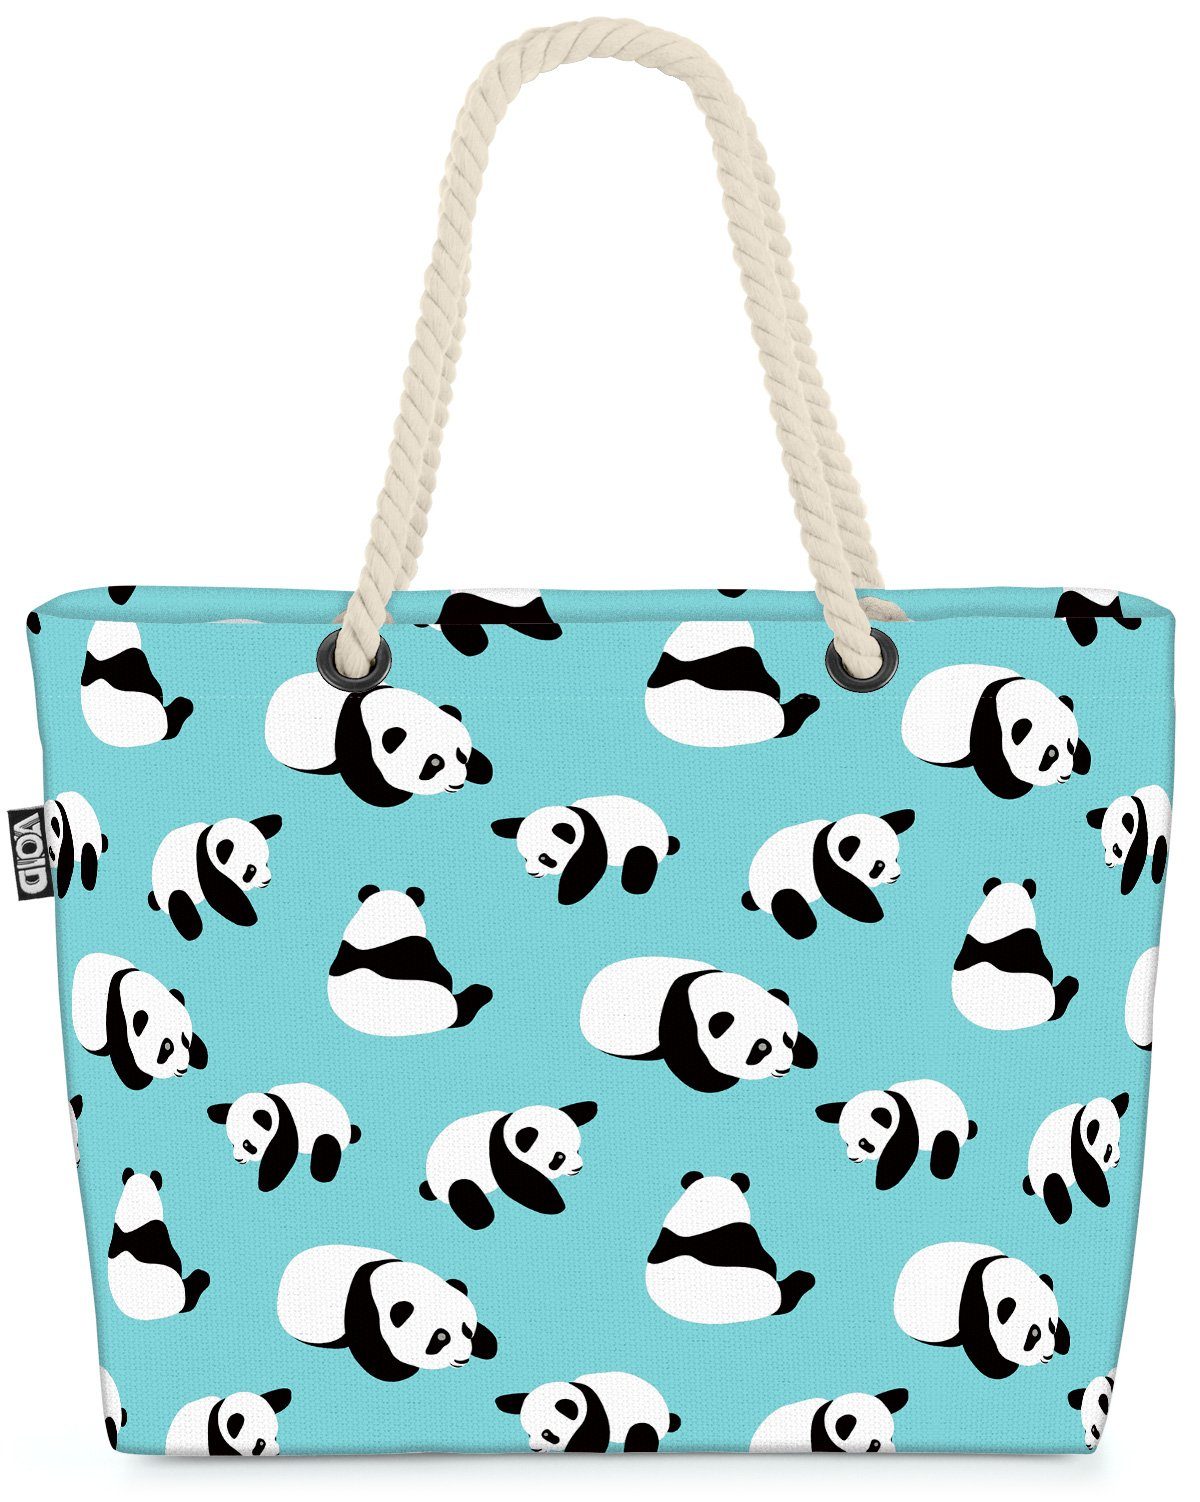 VOID Strandtasche nett Panda Muster cartoons süss hübsch Kinderzimmer bär (1-tlg), charakter Bär